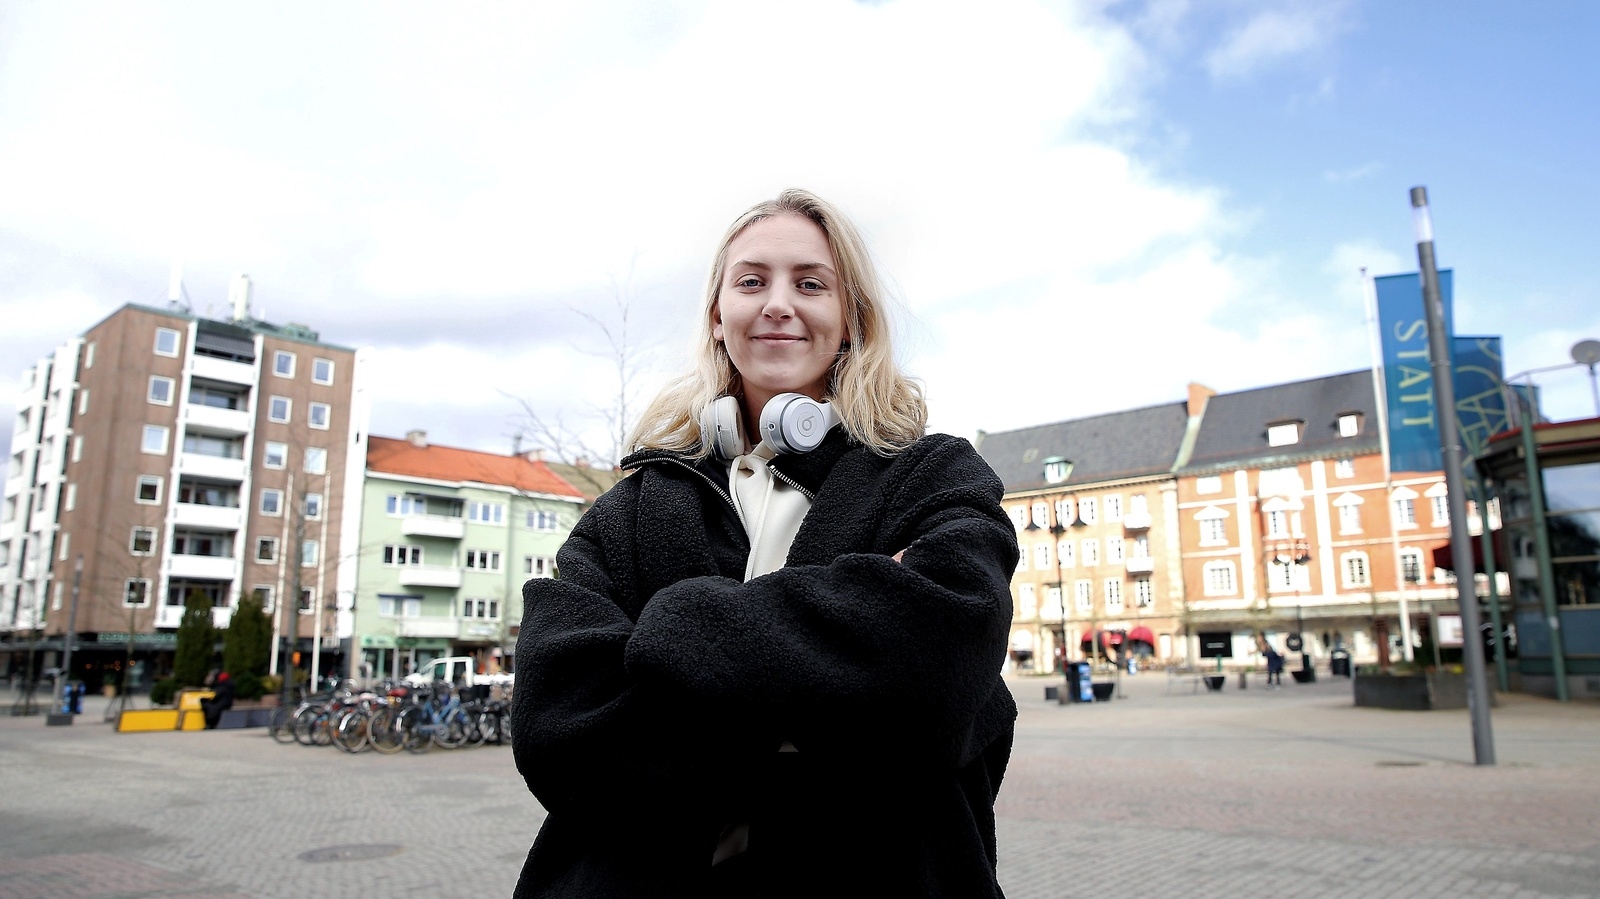 Elinore Johansson tycker det är skönt att vara hemma i Hässleholm på lite ledighet även om den är ofrivillig. Men hon kan se tillbaka på ett år i Norge som gett henne ett lyft i karriären.
Foto: Stefan Sandström